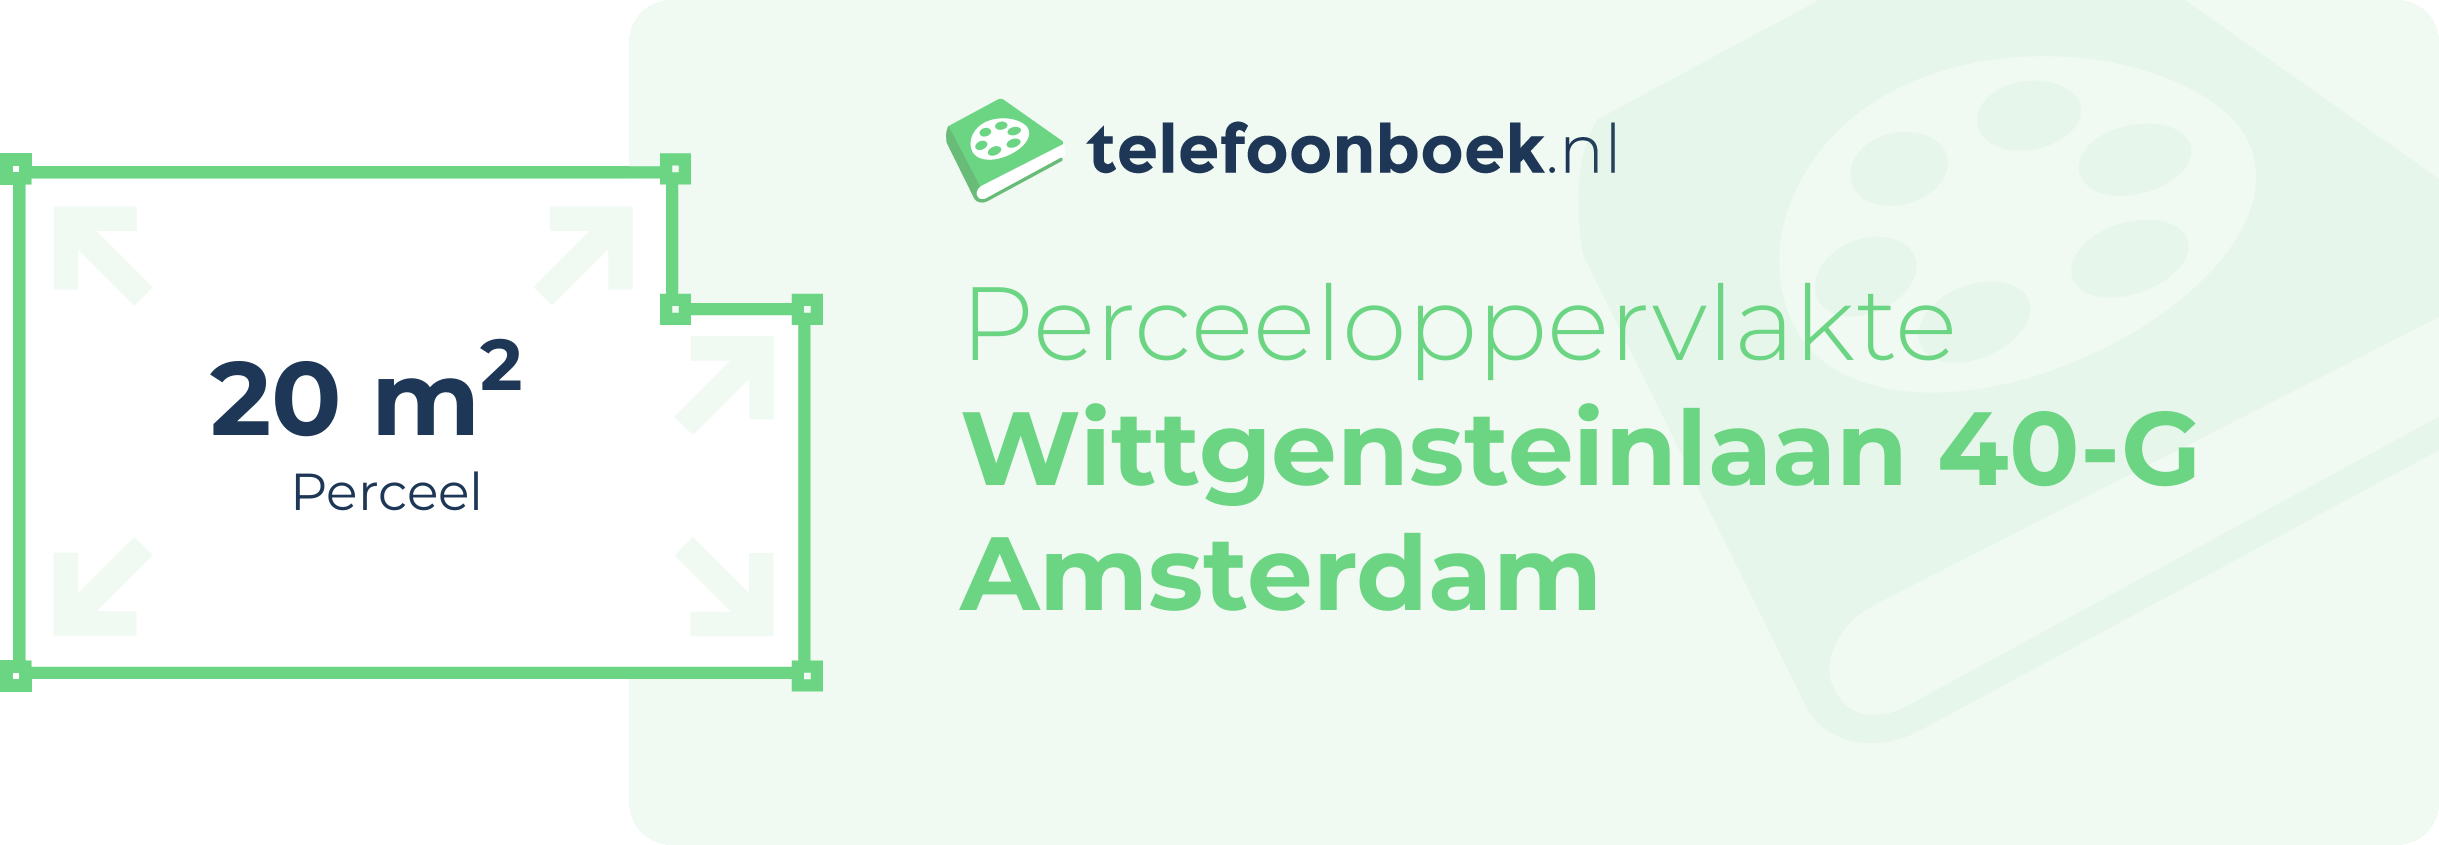 Perceeloppervlakte Wittgensteinlaan 40-G Amsterdam